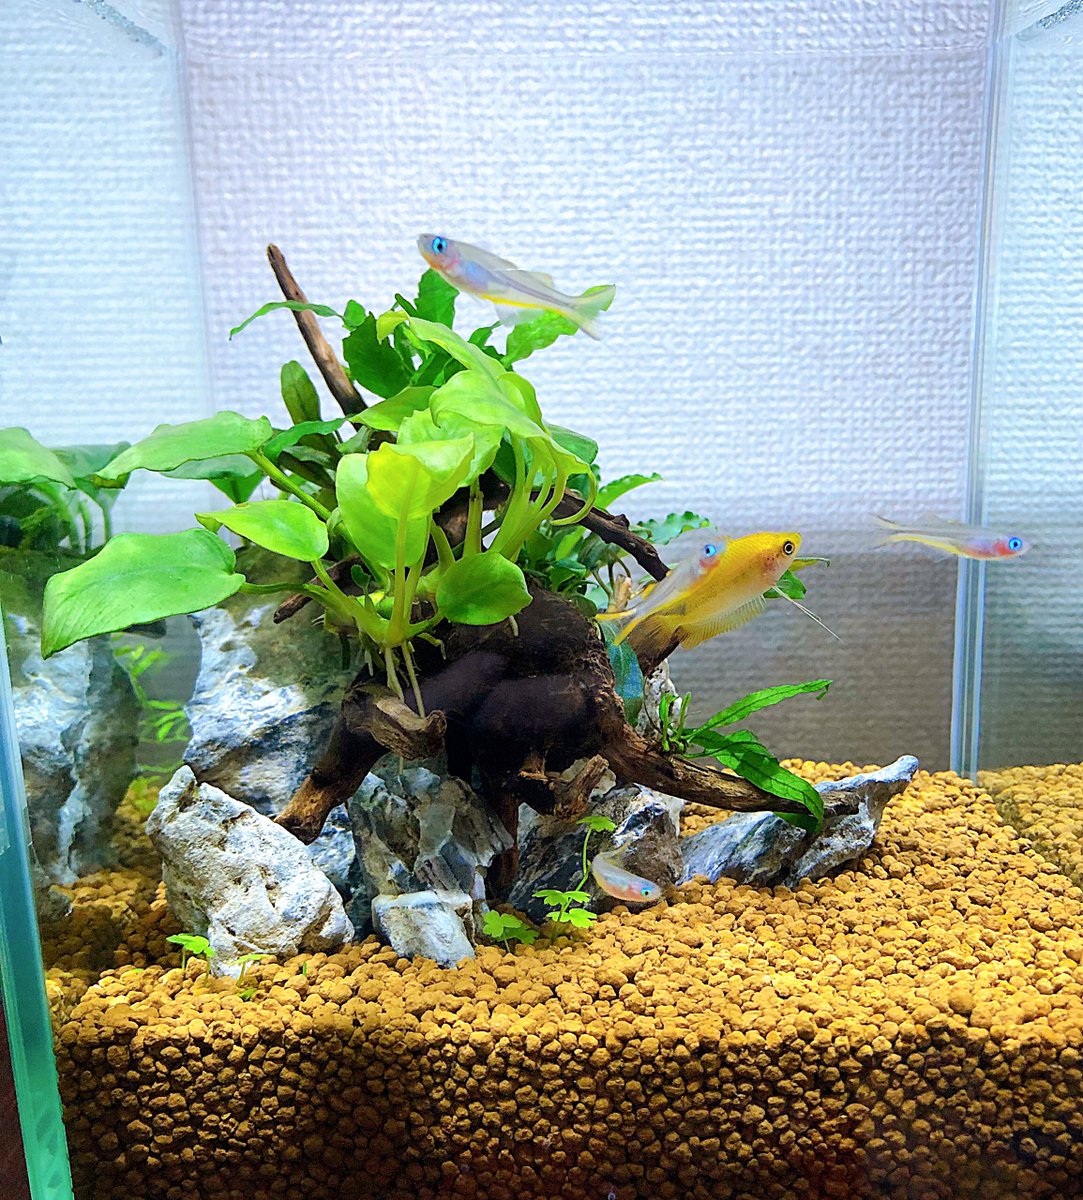 リビング水槽レポです🐟
陰性水草と黄色い魚が本当に大好きすぎます 